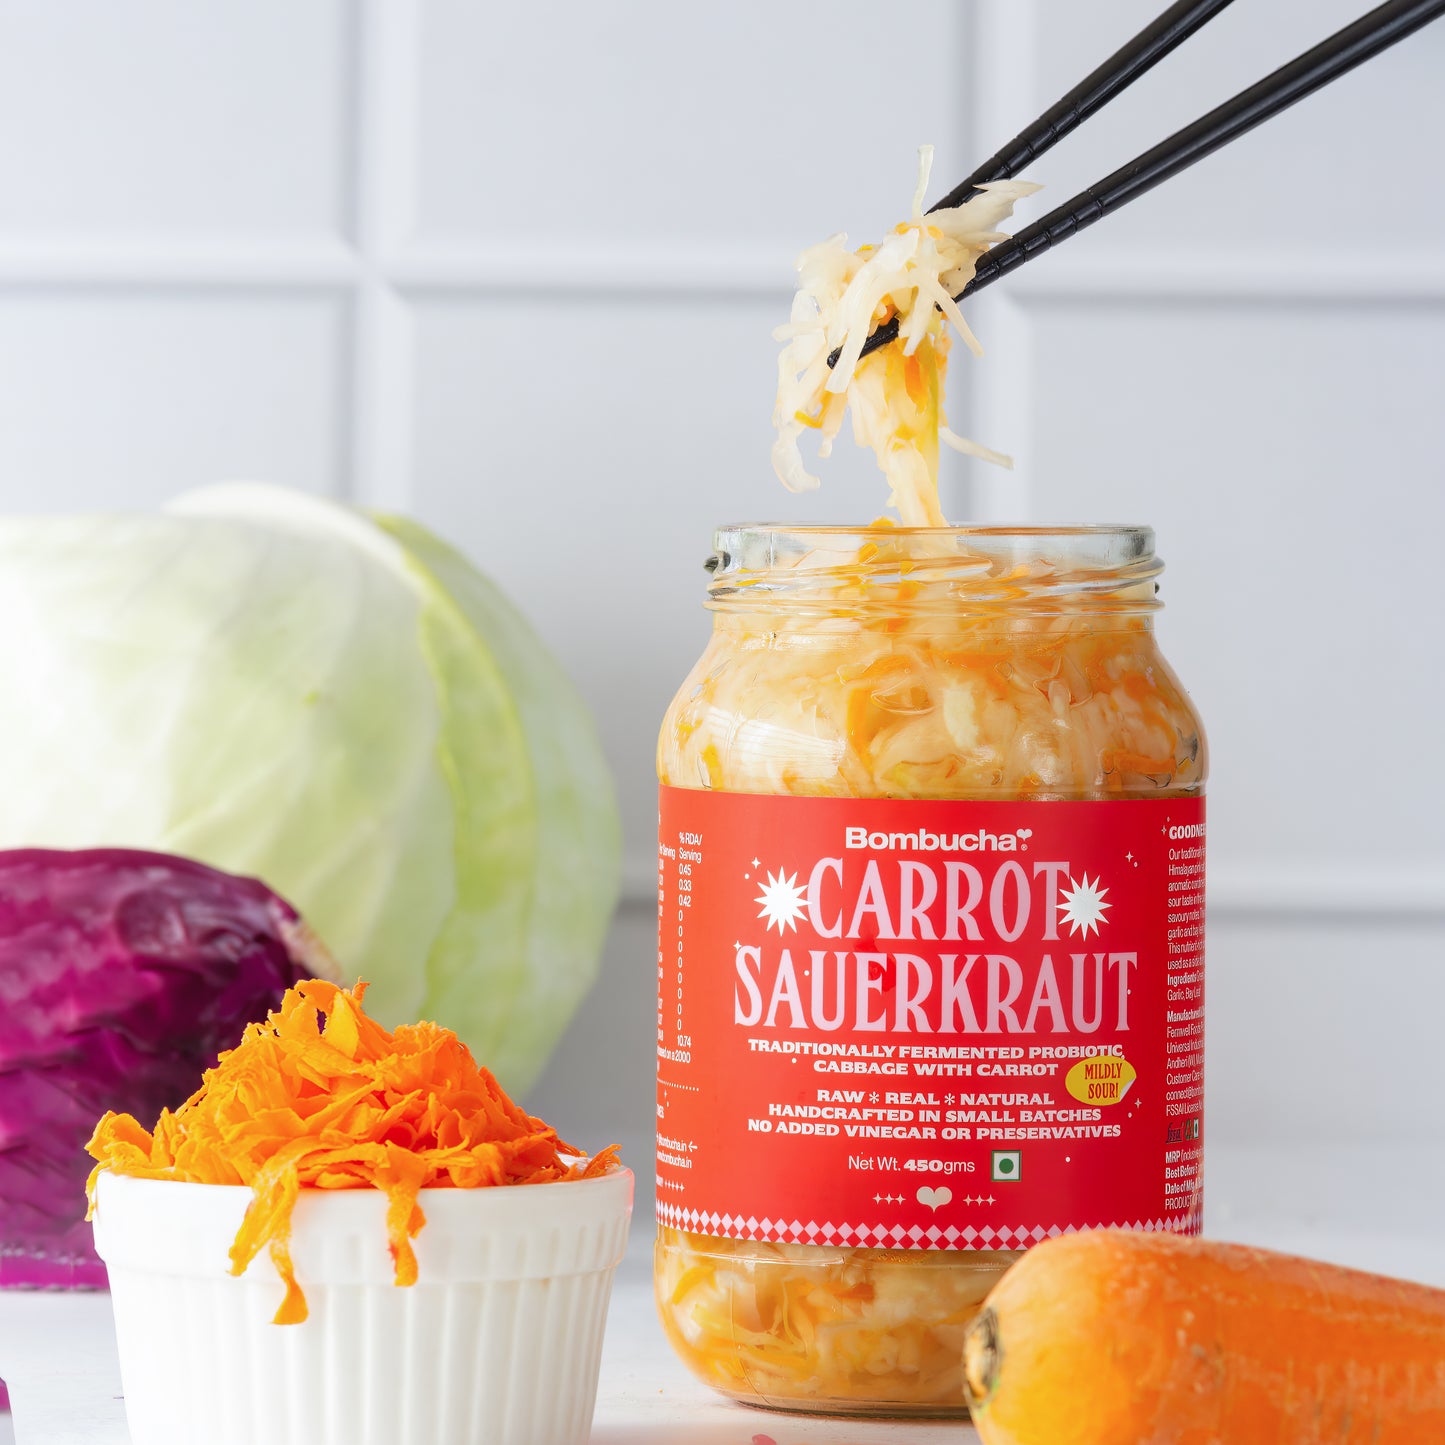 Sauerkraut-Carrot & Cabbage  450gm